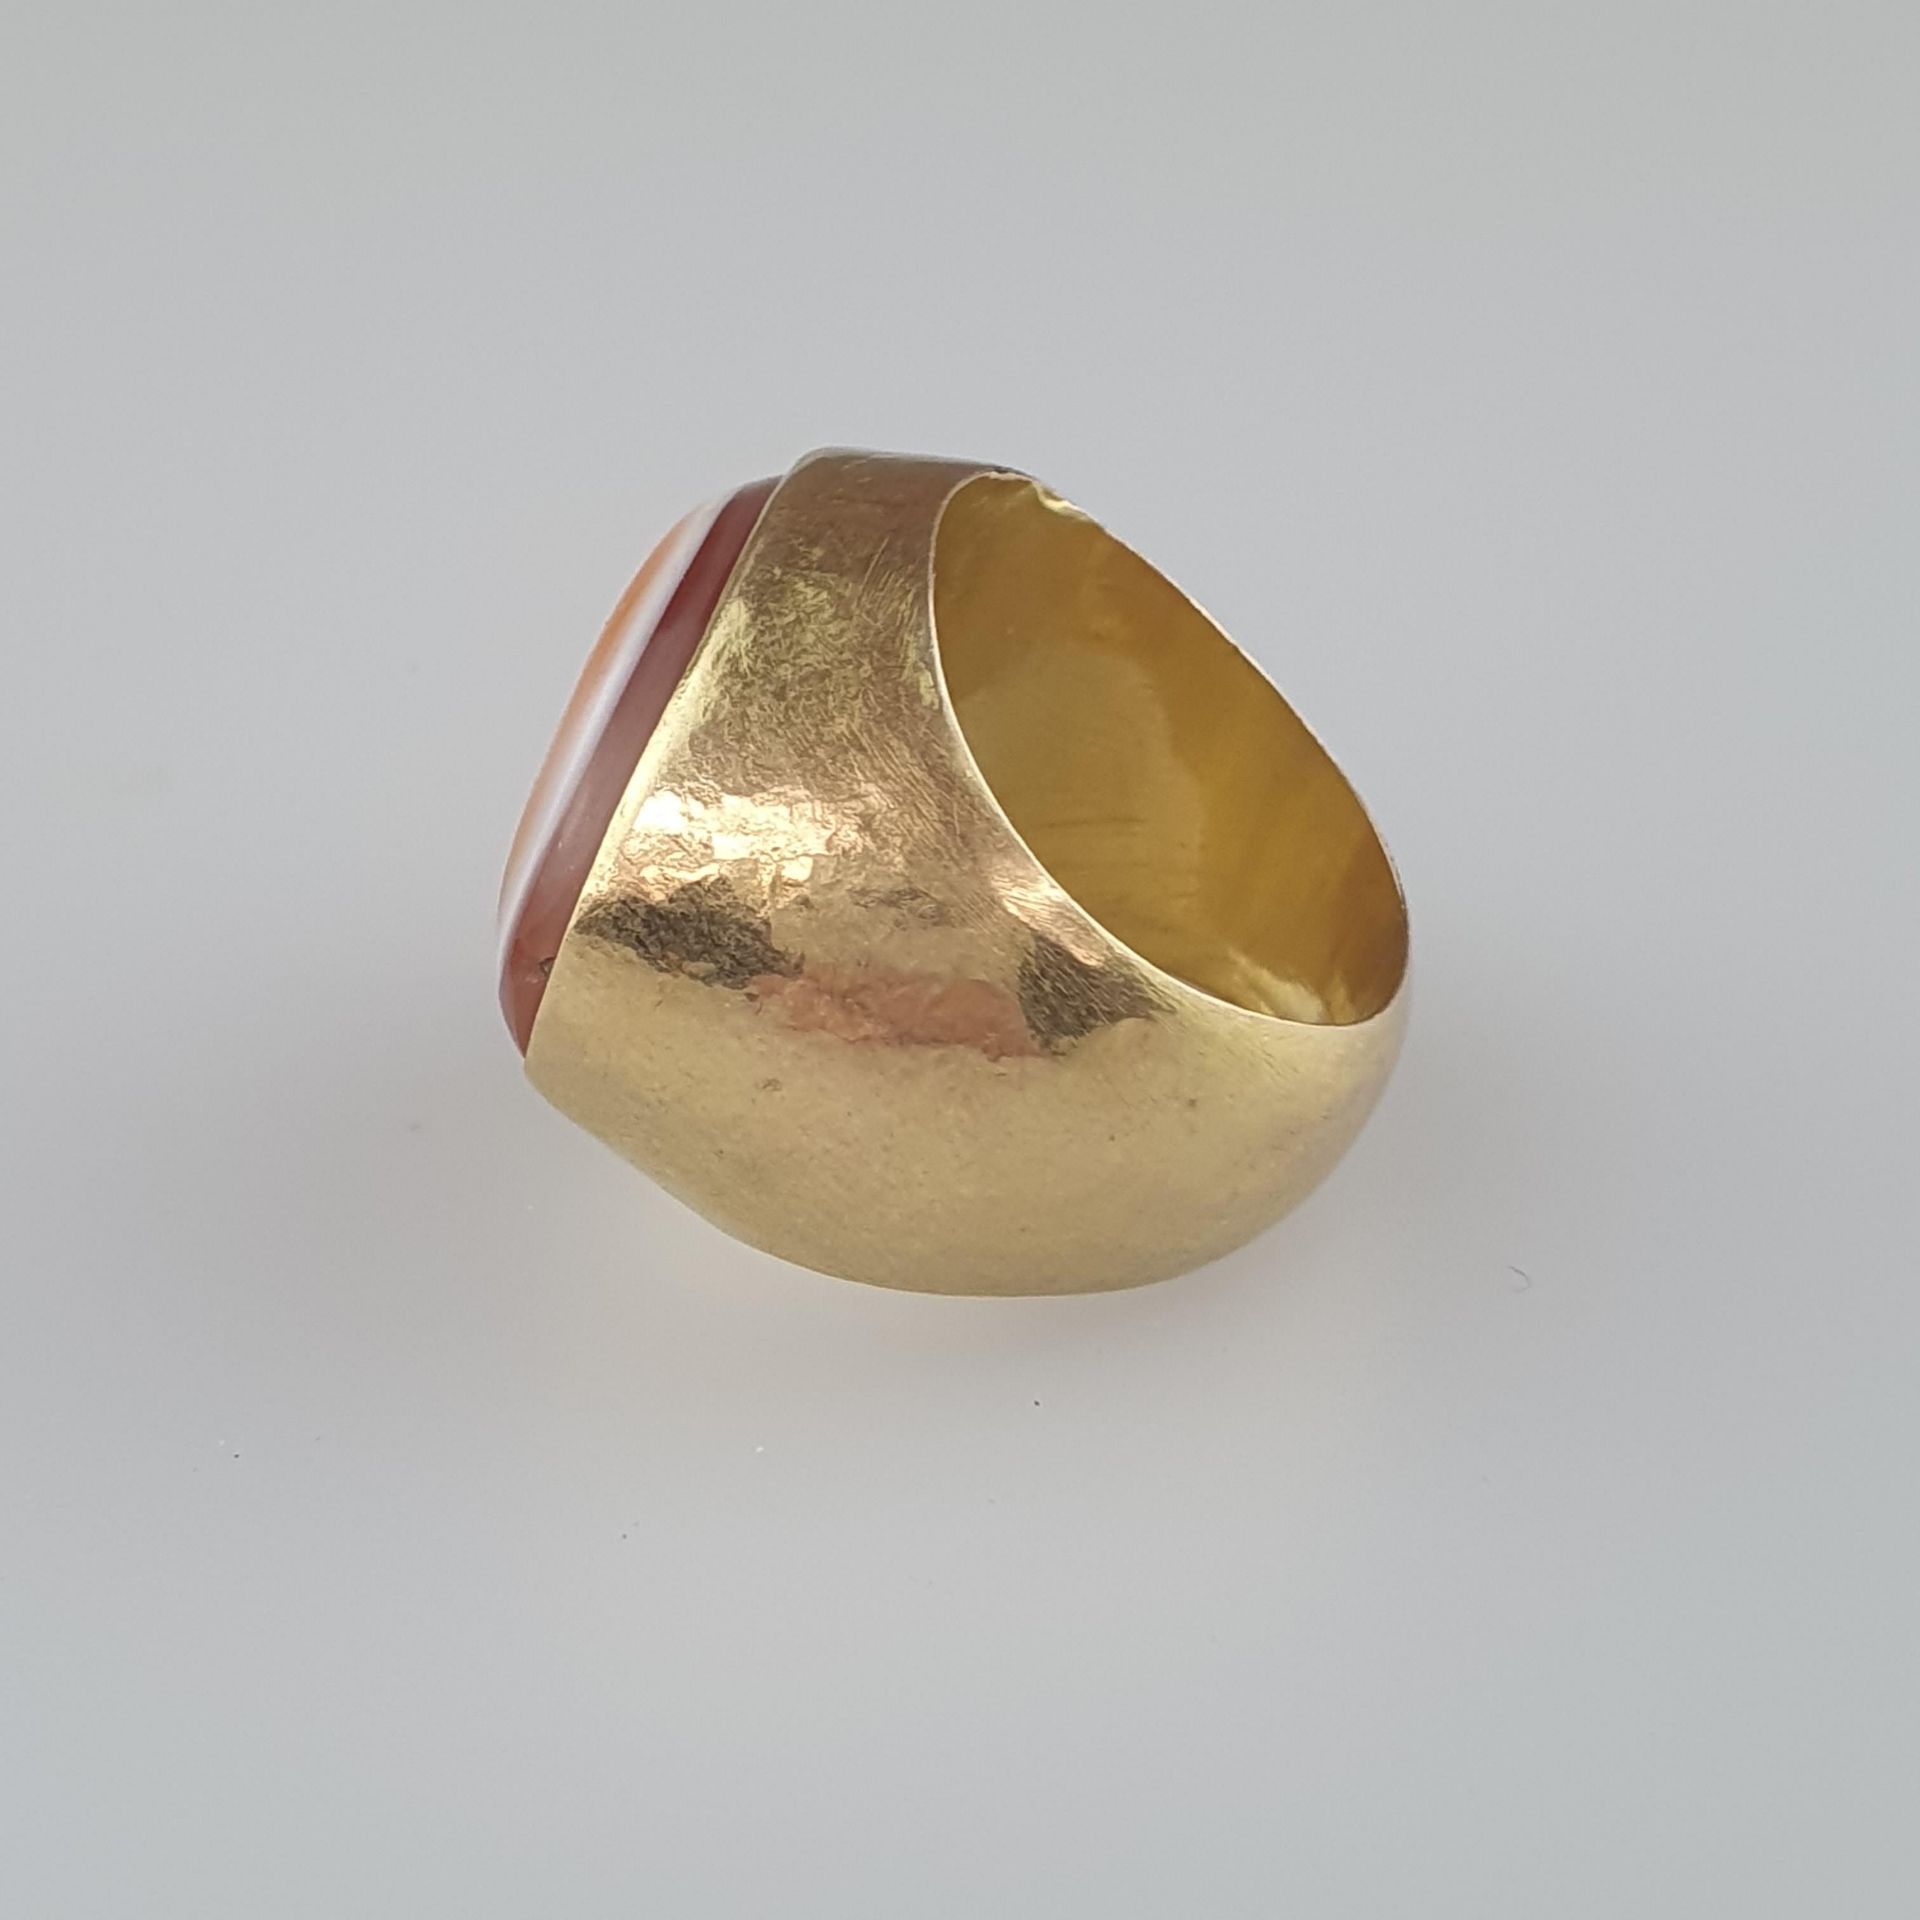 Goldring mit Lagenachat - wohl antik, Gelbgold, dreischichtiger, gewölbter, ovaler Lagenachat, - Bild 3 aus 5